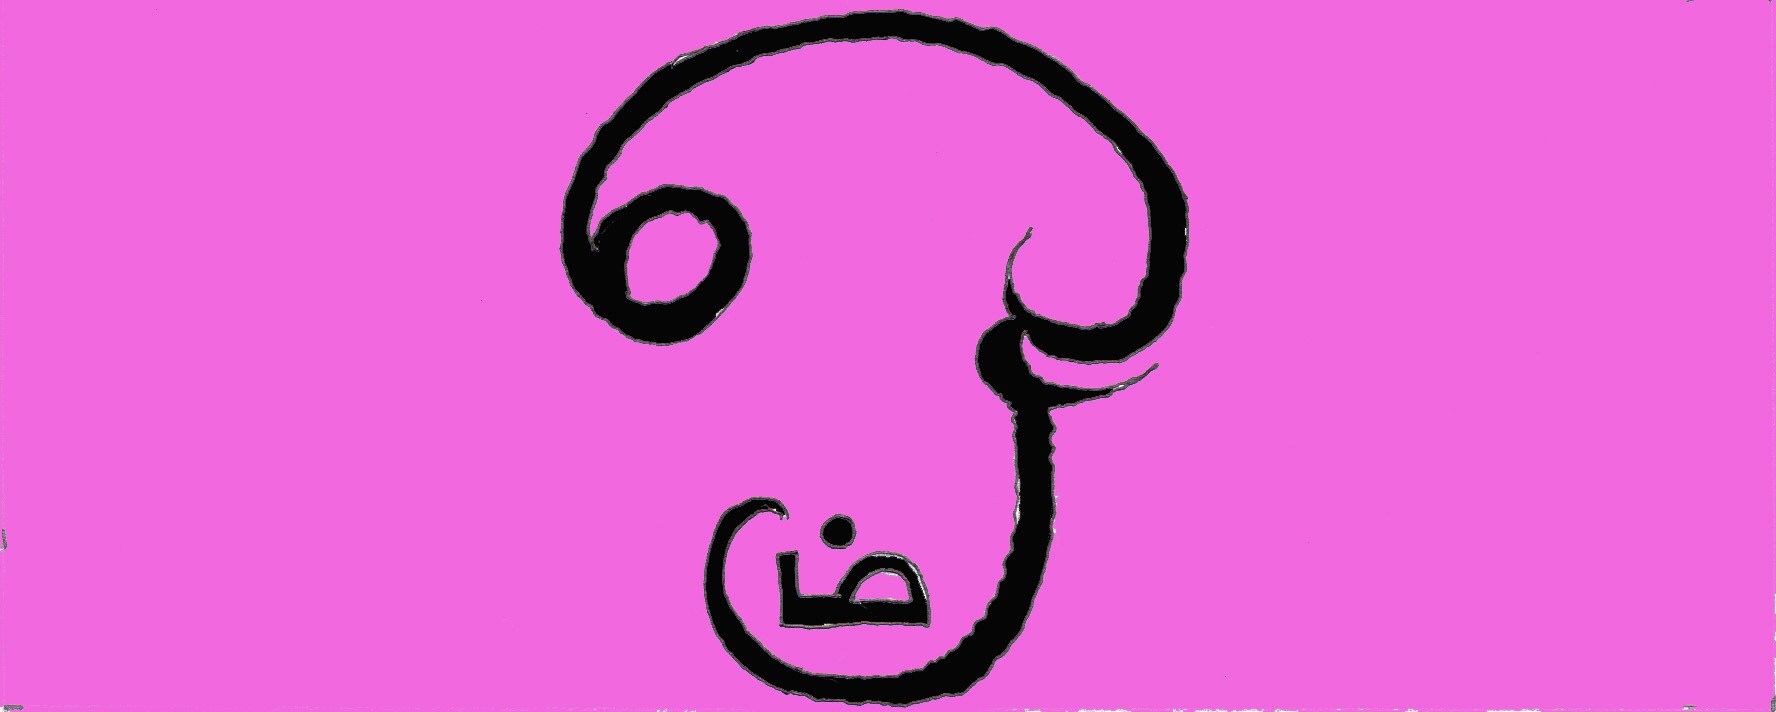 Immagine dell'Ohm (Per leggerne la descrizione proseguire nel link). Rappresentazione della sillaba in lingua tamil in colore nero su di uno sfondo rosa.